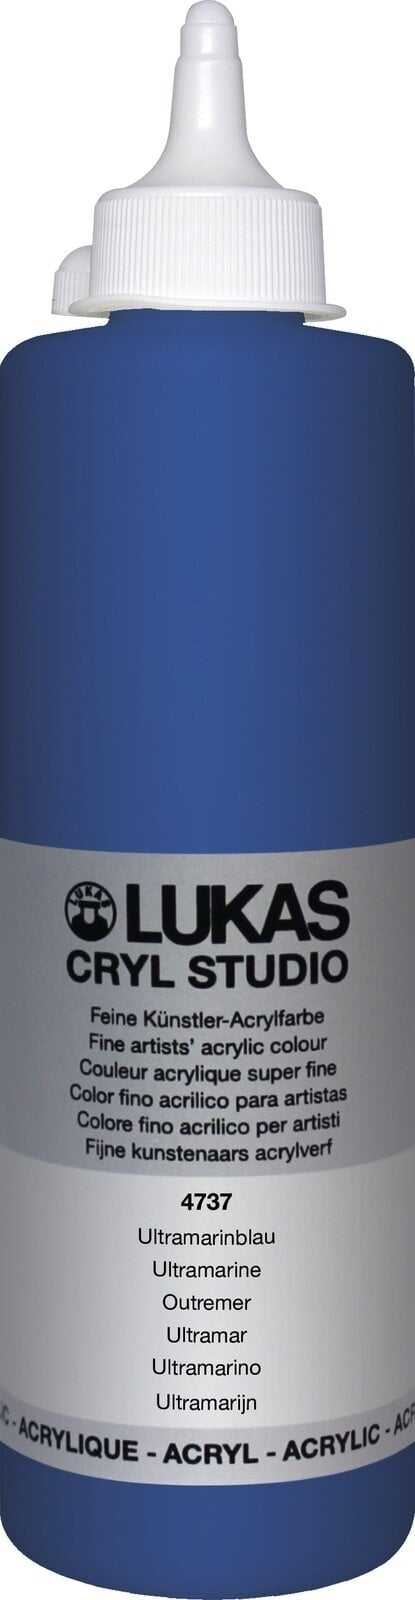 Akrylová farba Lukas Cryl Studio Akrylová farba 500 ml Ultramarine